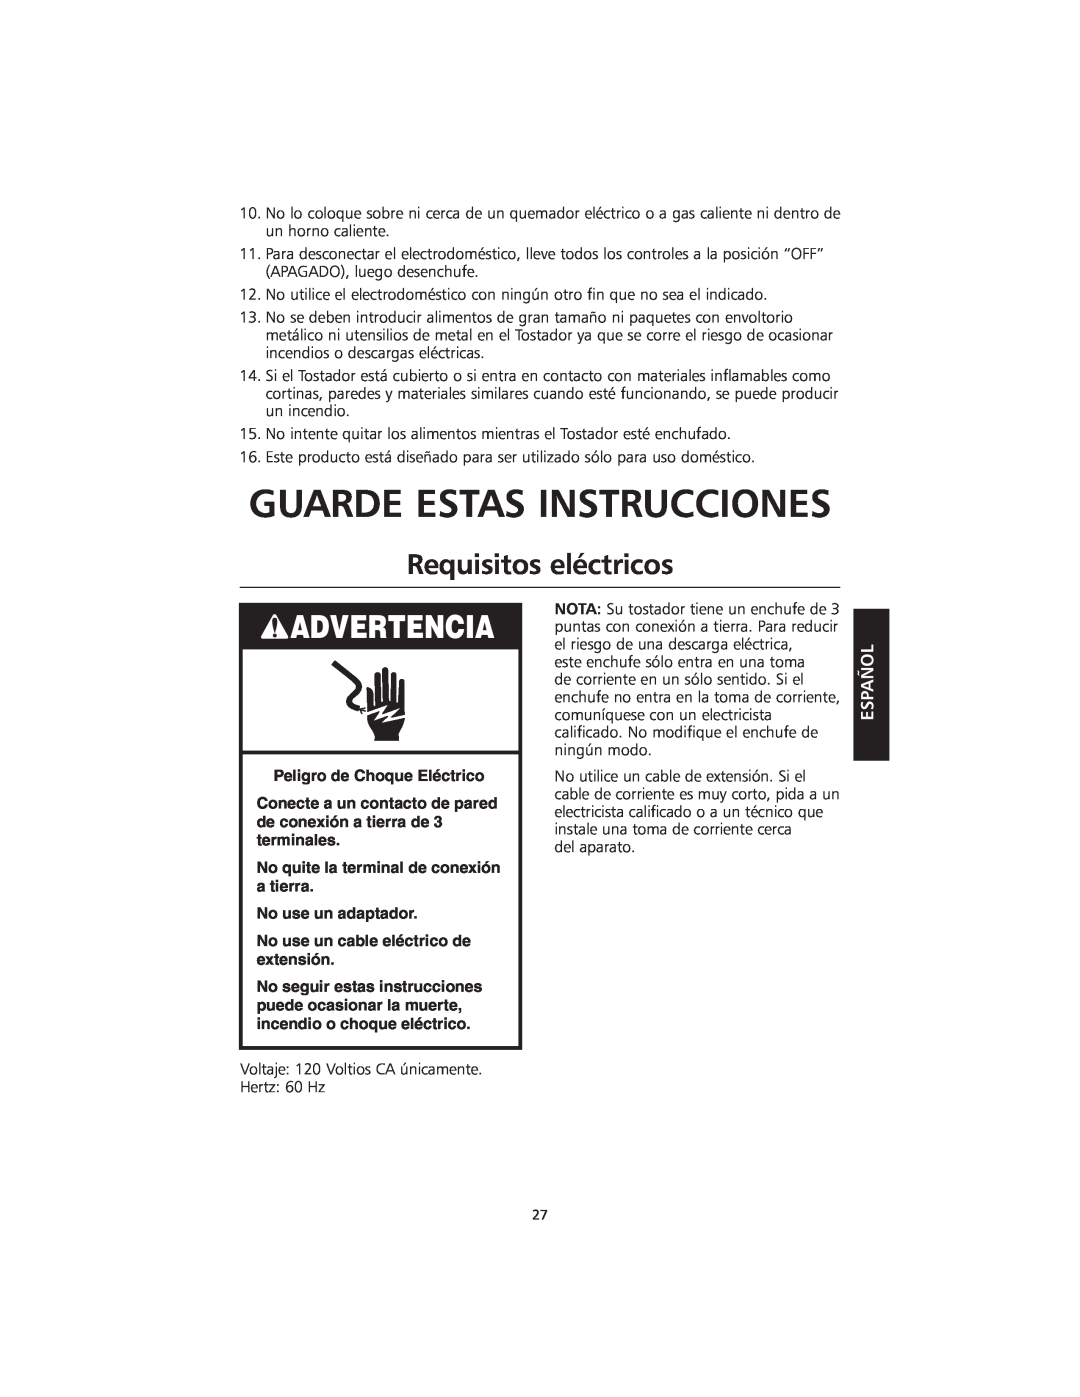 KitchenAid KMTT200 Guarde Estas Instrucciones, Requisitos eléctricos, Peligro de Choque Eléctrico, Advertencia, Español 